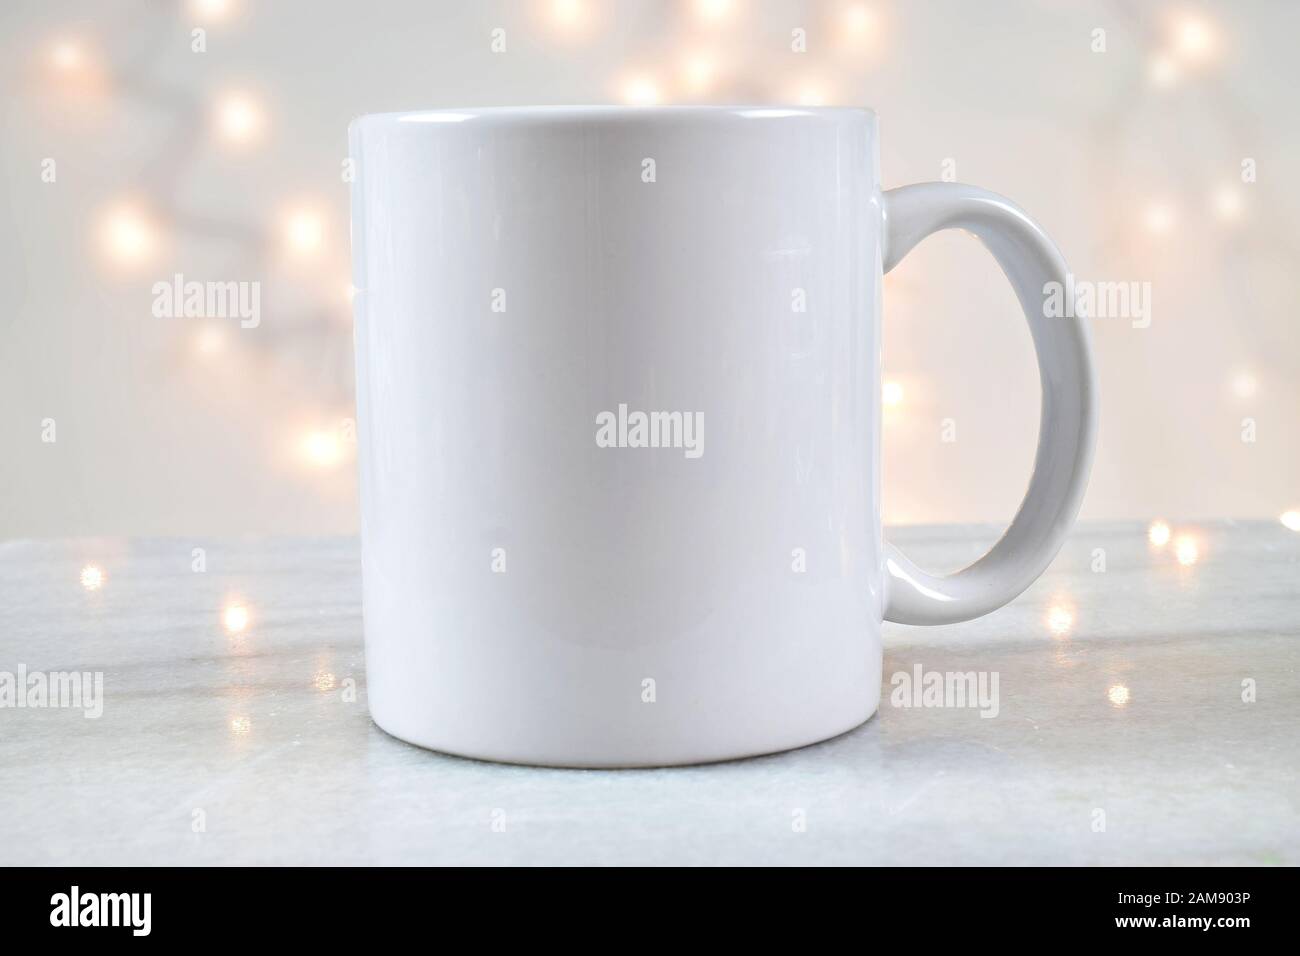 Une tasse à café de 11 oz repose délicieusement sur un fond de marbre avec des lumières de Noël blanches illuminant à l'arrière-plan. Ajoutez votre propre motif au mug. Banque D'Images